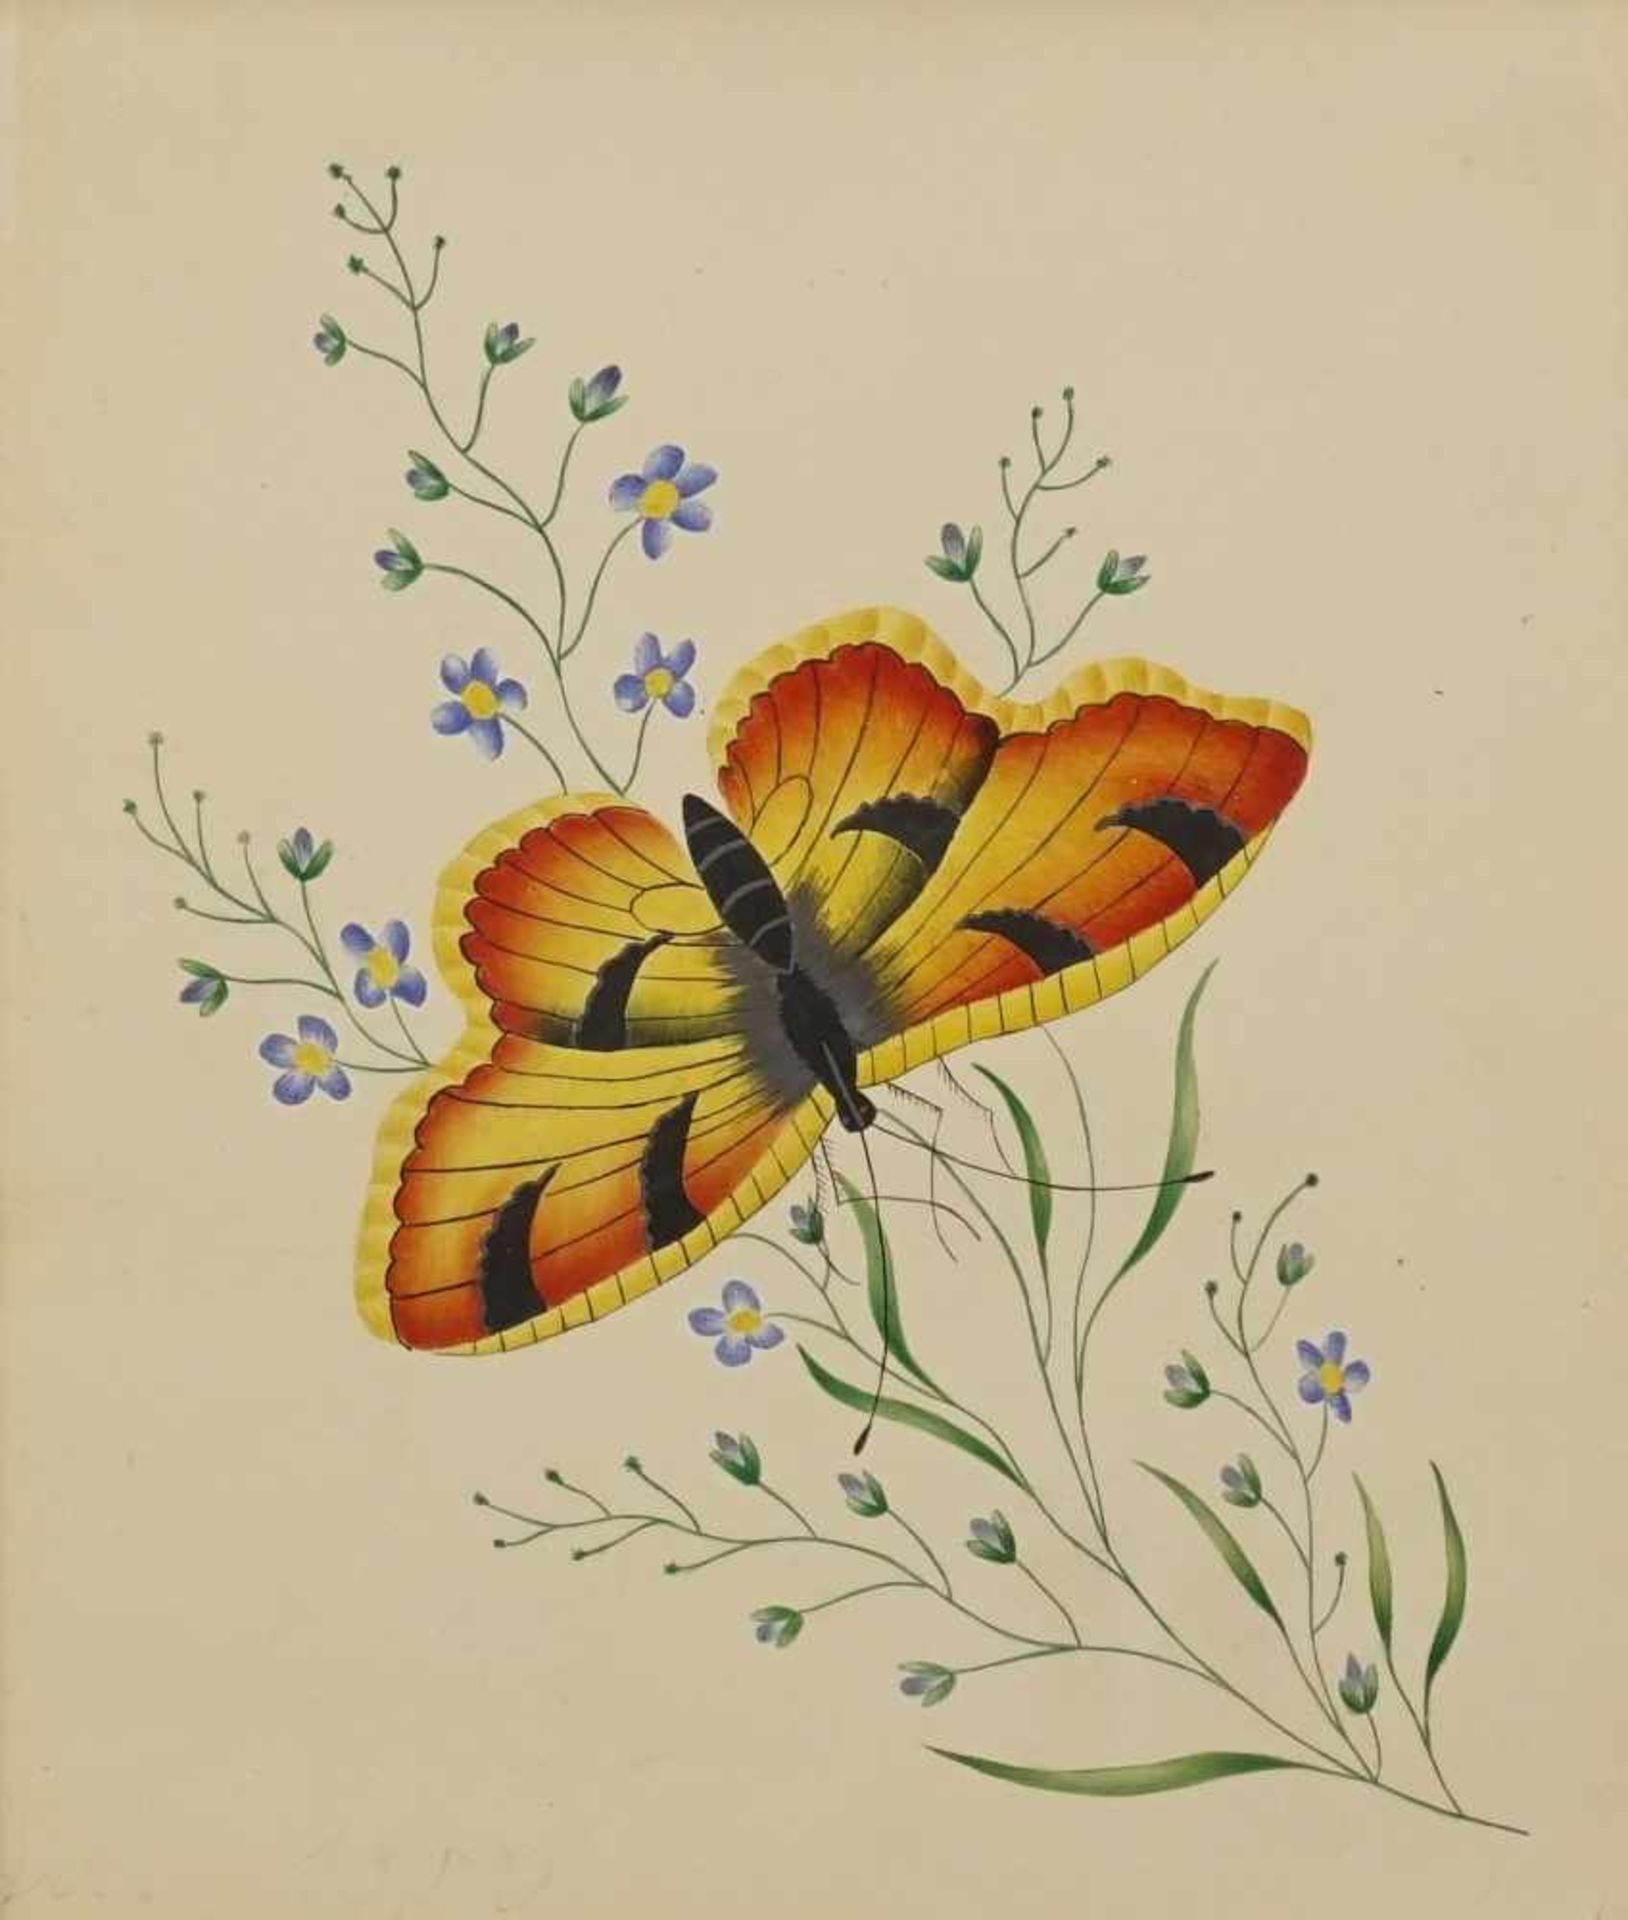 Unbekannter Maler, "Schmetterling"Aquarell/Malpappe, 1. Hälfte 19. Jh., guter Zustand, 15 x 13 cm (